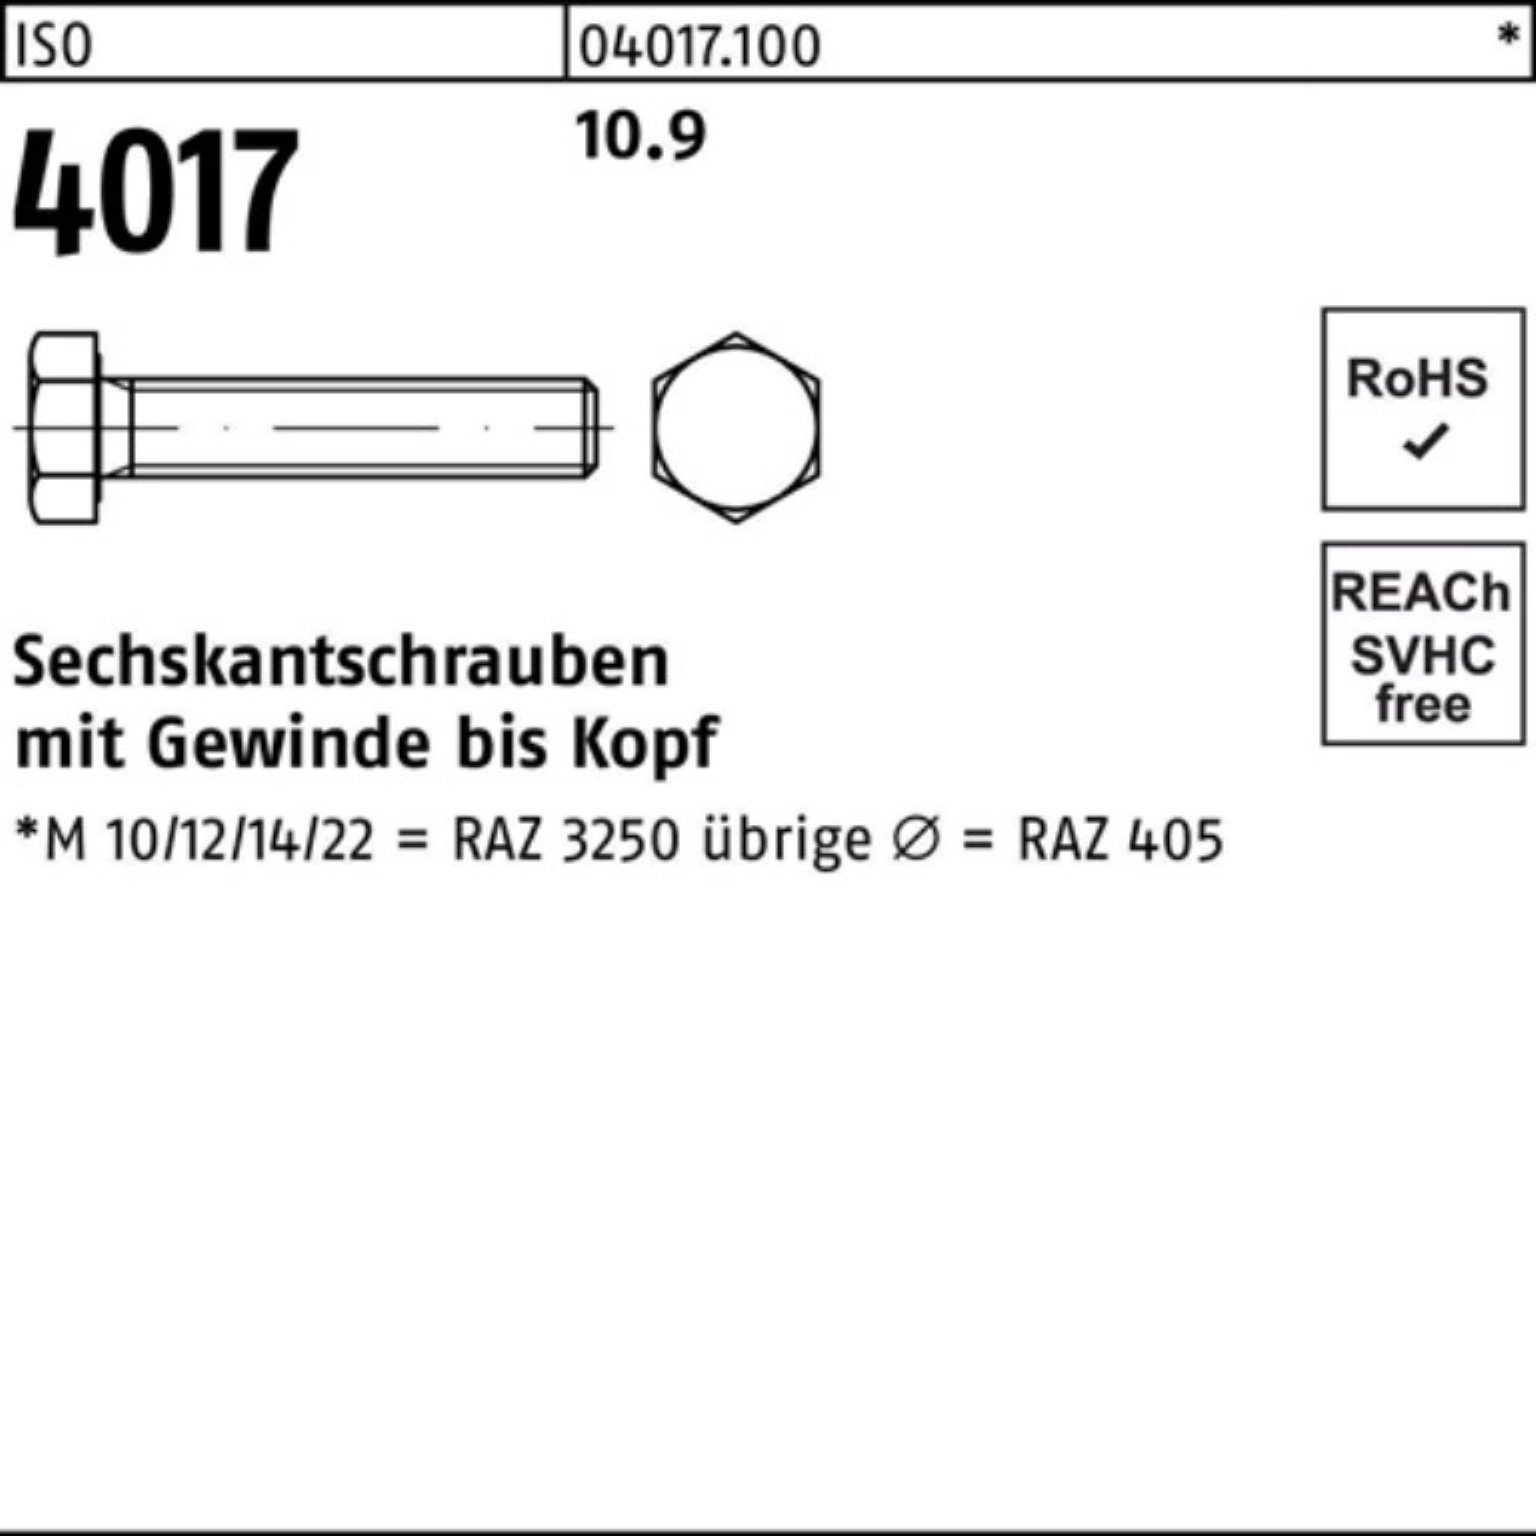 ISO Sechskantschraube Sechskantschraube Bufab 100er M30x ISO 10.9 401 75 1 4017 Stück Pack VG